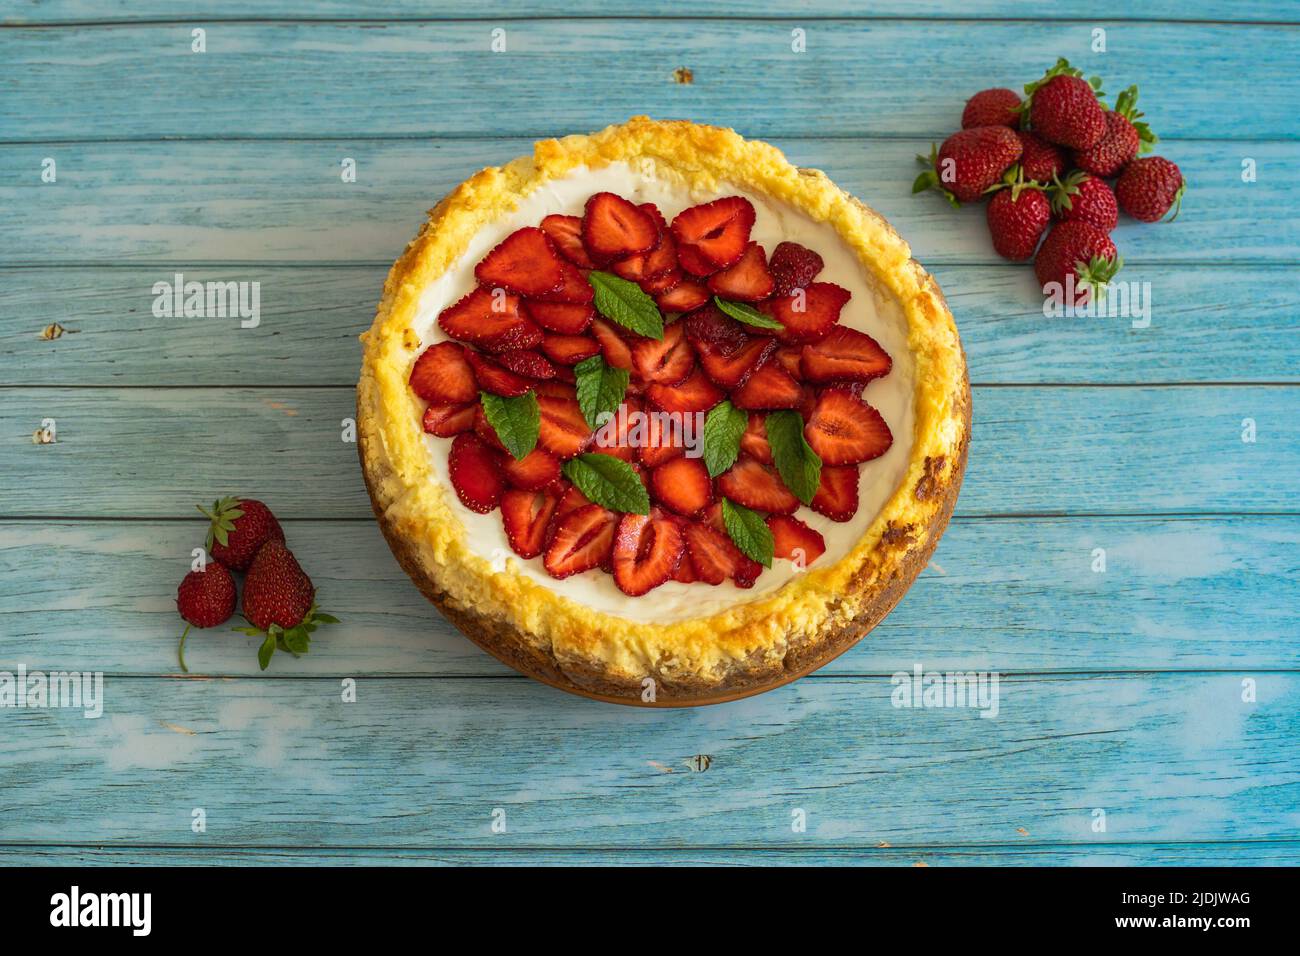 Gâteau maison aux fraises sur une table en bois.délicieux cheesecake avec des fraises décorées de feuilles de menthe.vue du dessus.fruits d'été biologiques sains Banque D'Images